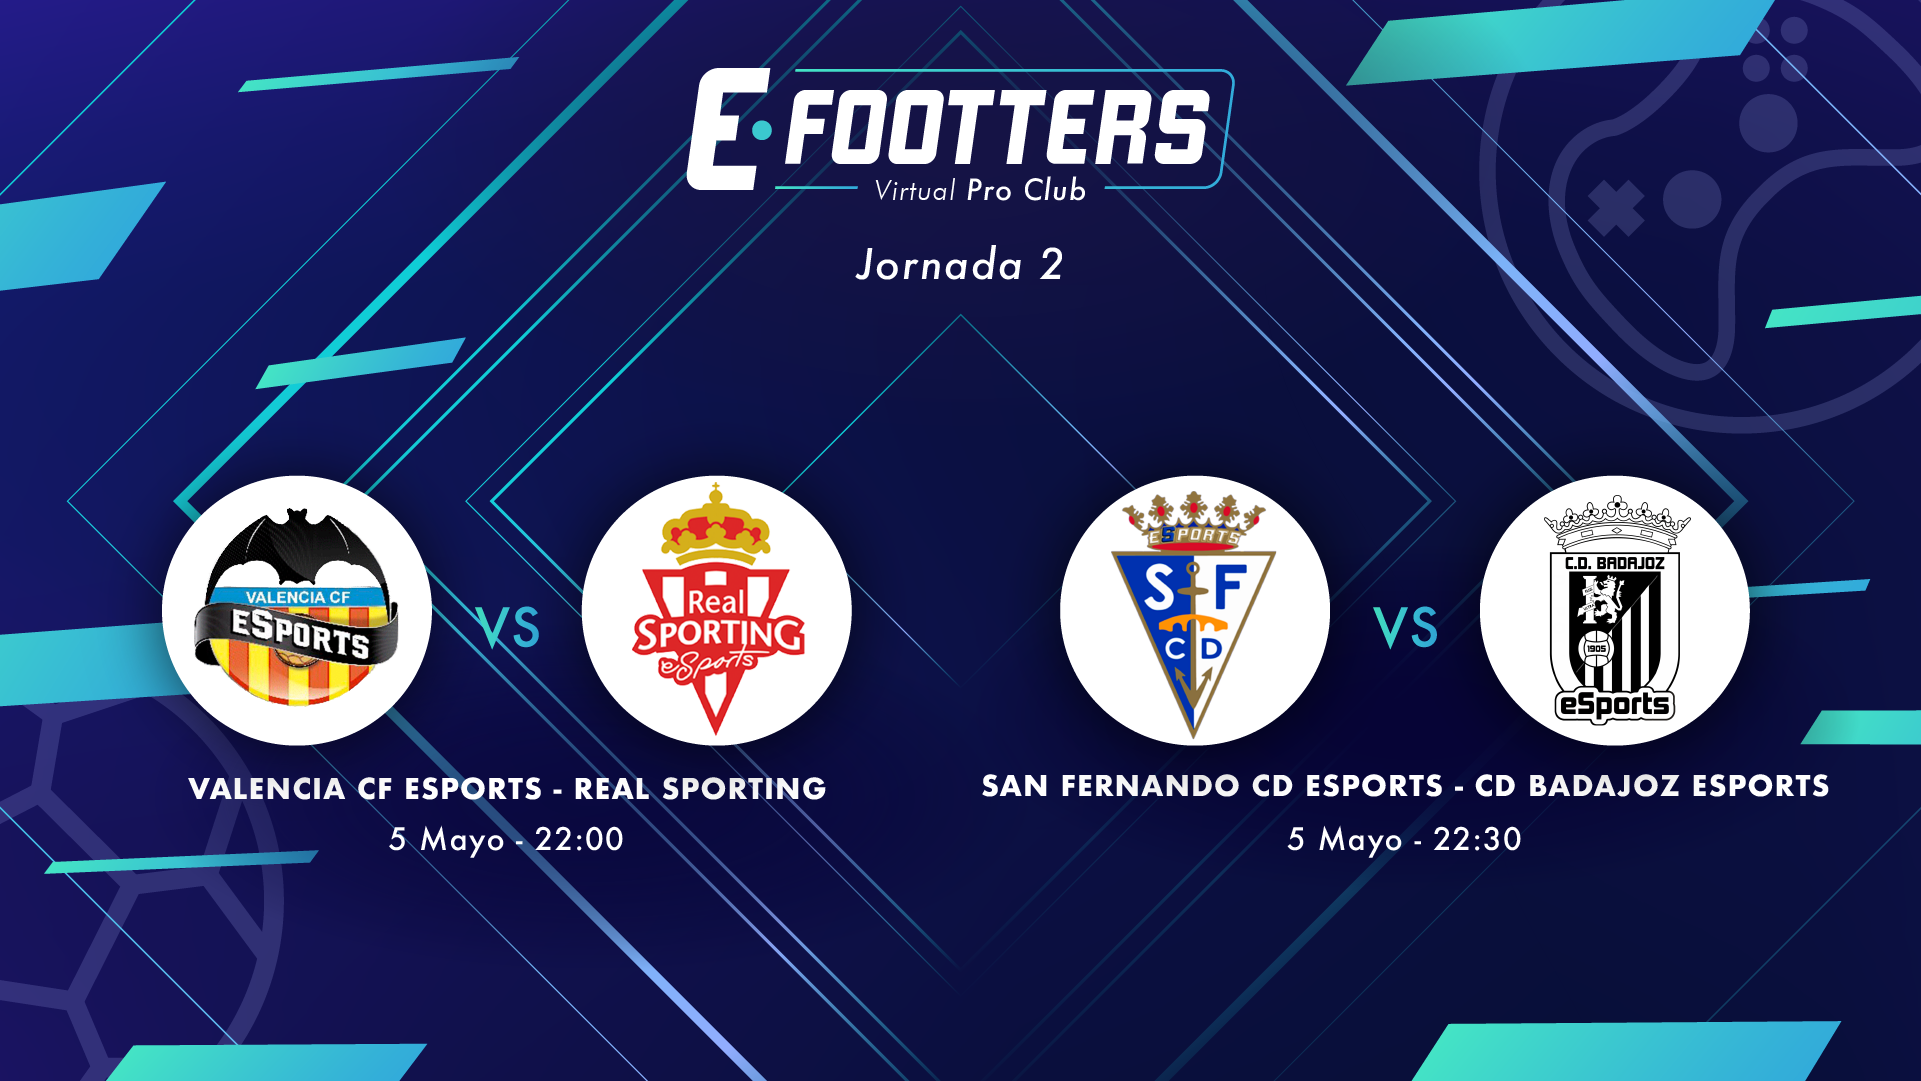 Campeonato Footters: Valencia-Sporting y San Fernando - Badajoz